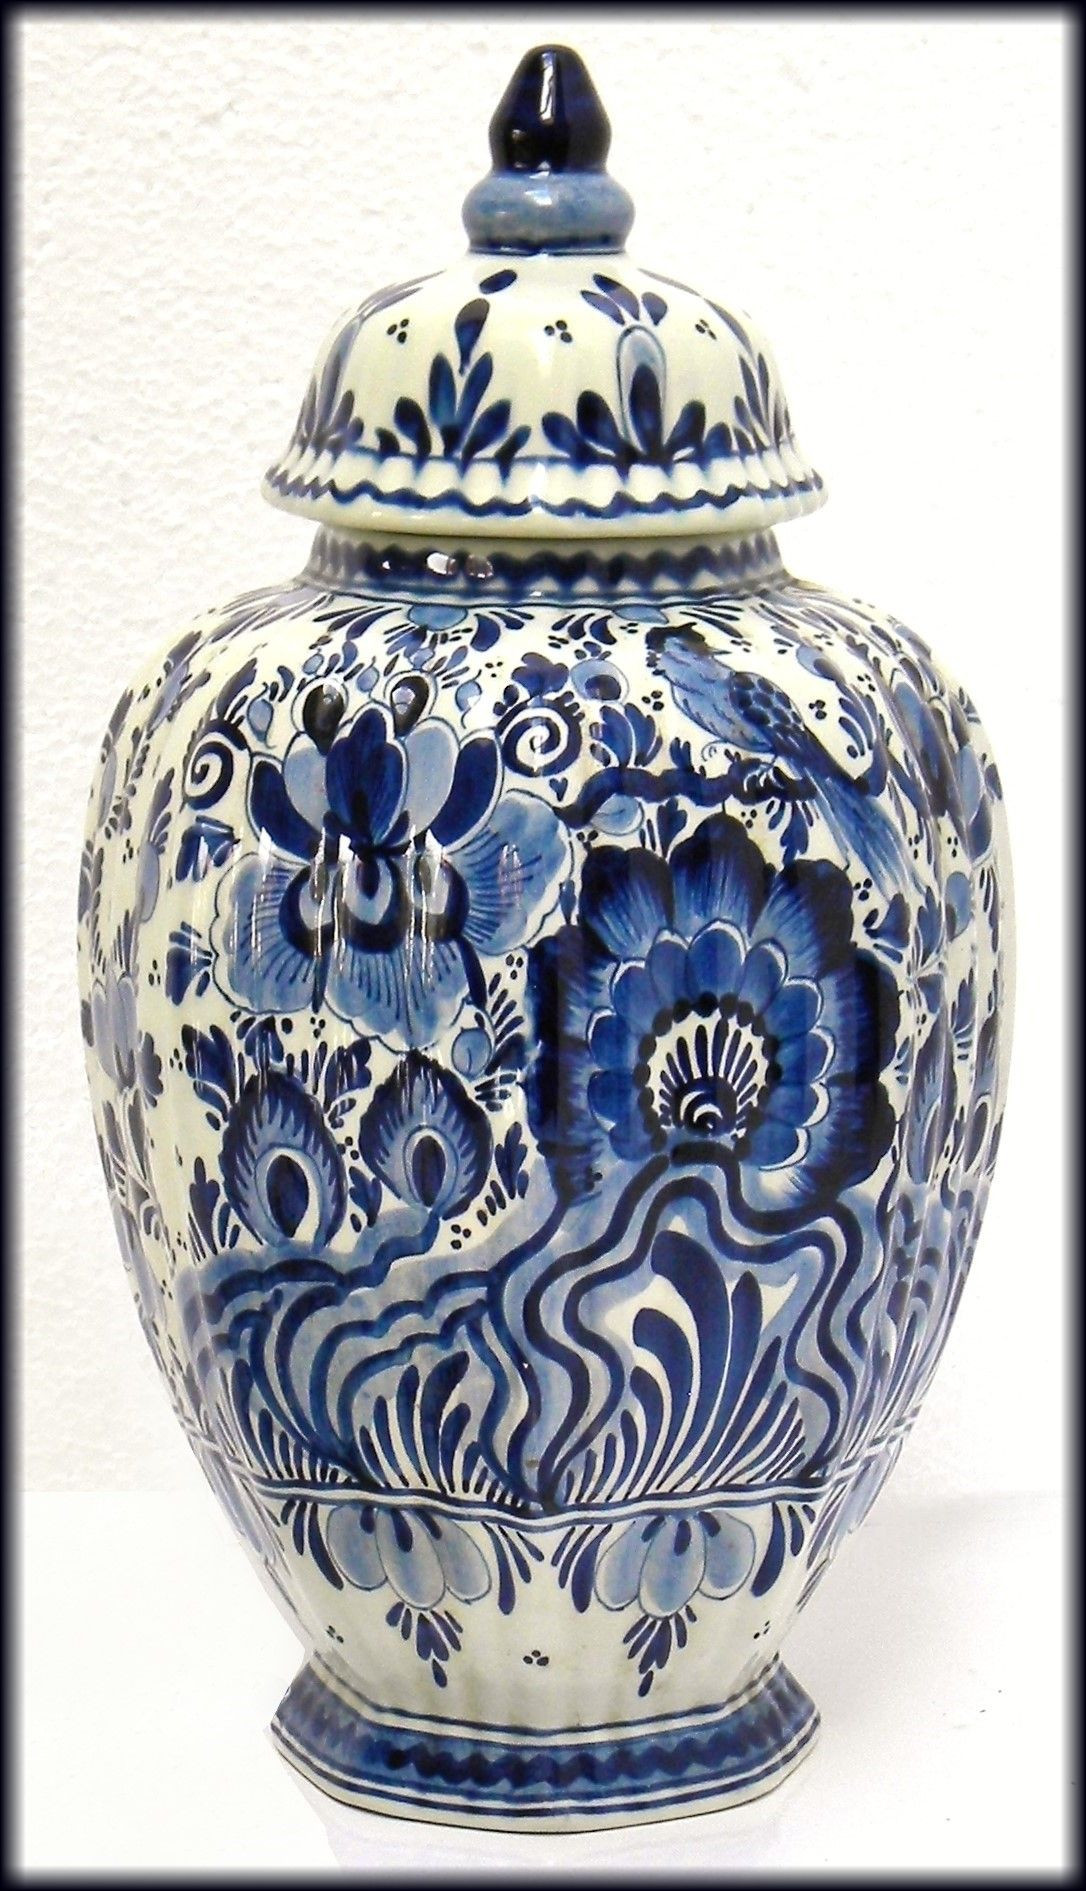 tobacco leaf vase of vintage delft blue ceramic vase jar hand painted cobalt blue floral throughout amazing delft blue vintage dutch art pottery with cobalt blue bird and floral decoration